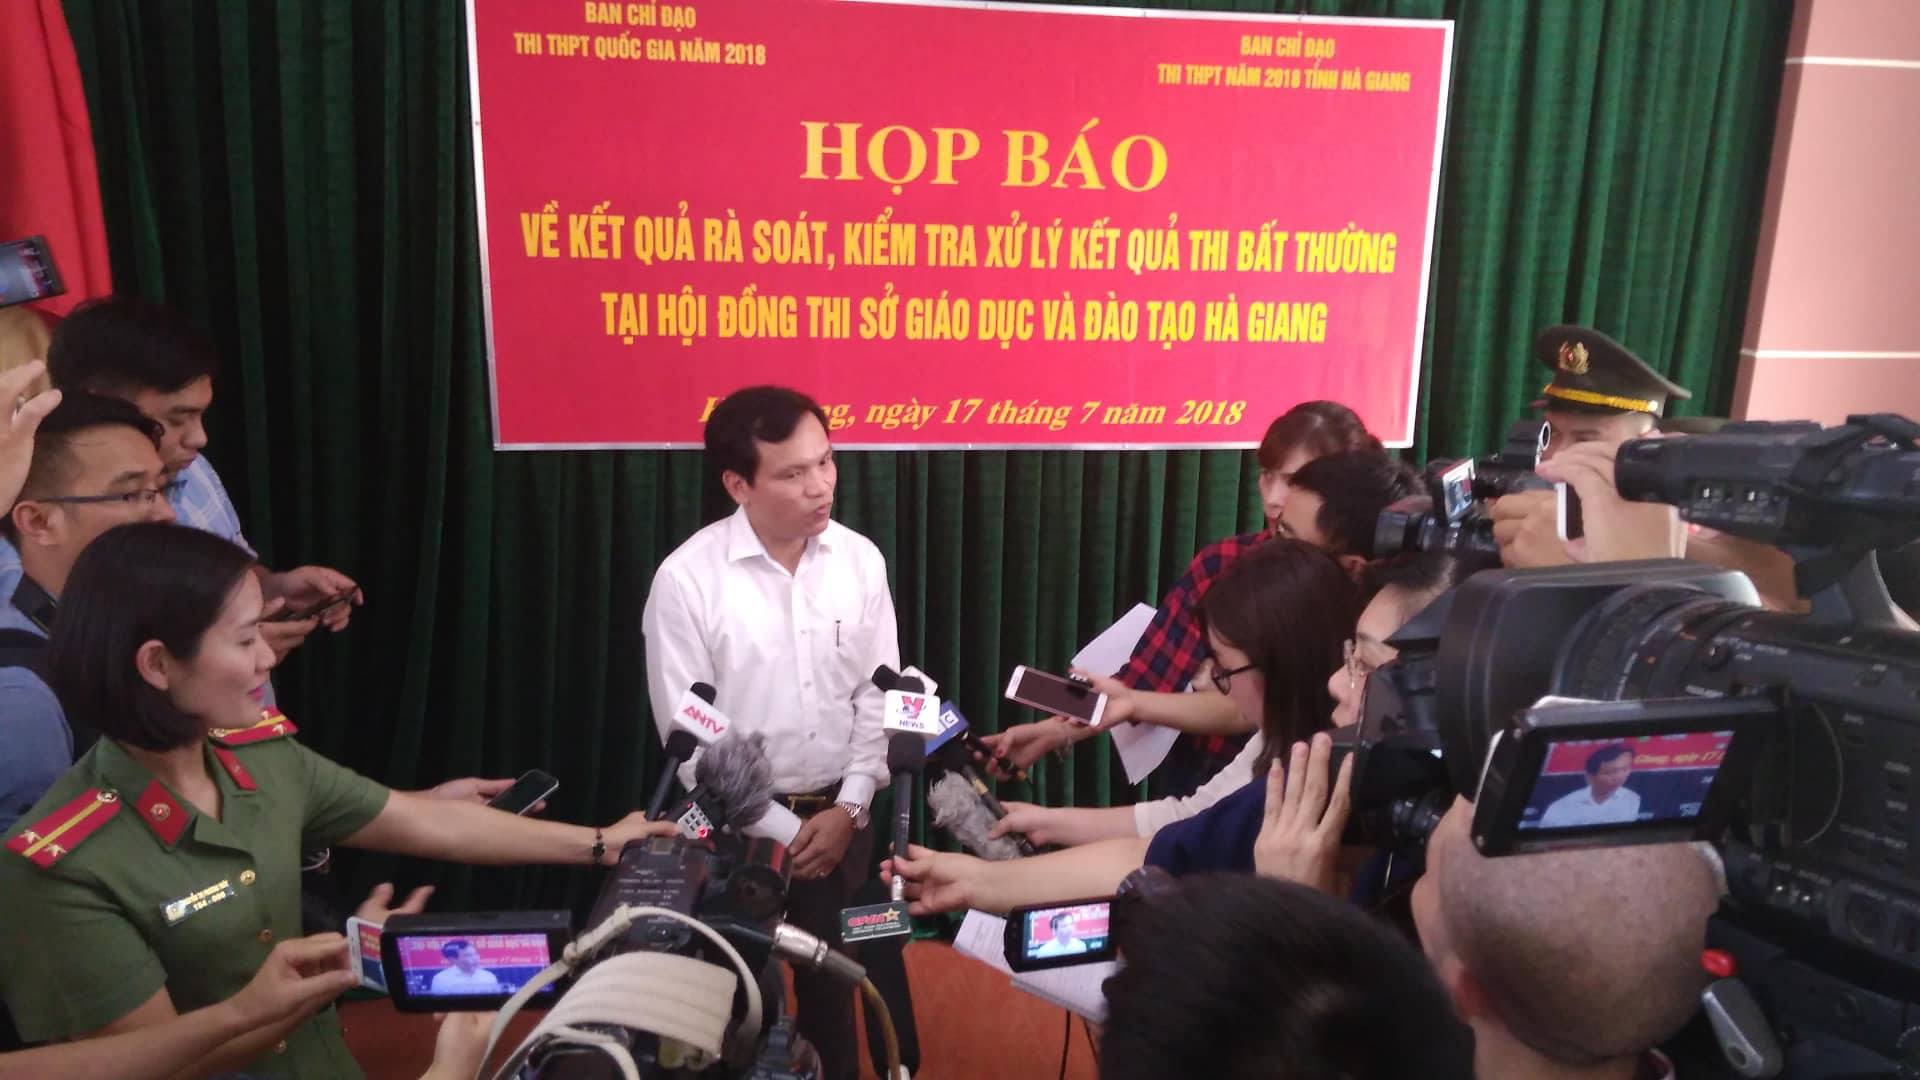 Phó phòng khảo thí Sở GD&ĐT của tỉnh Hà Giang sửa mỗi bài thi trong 6 giây